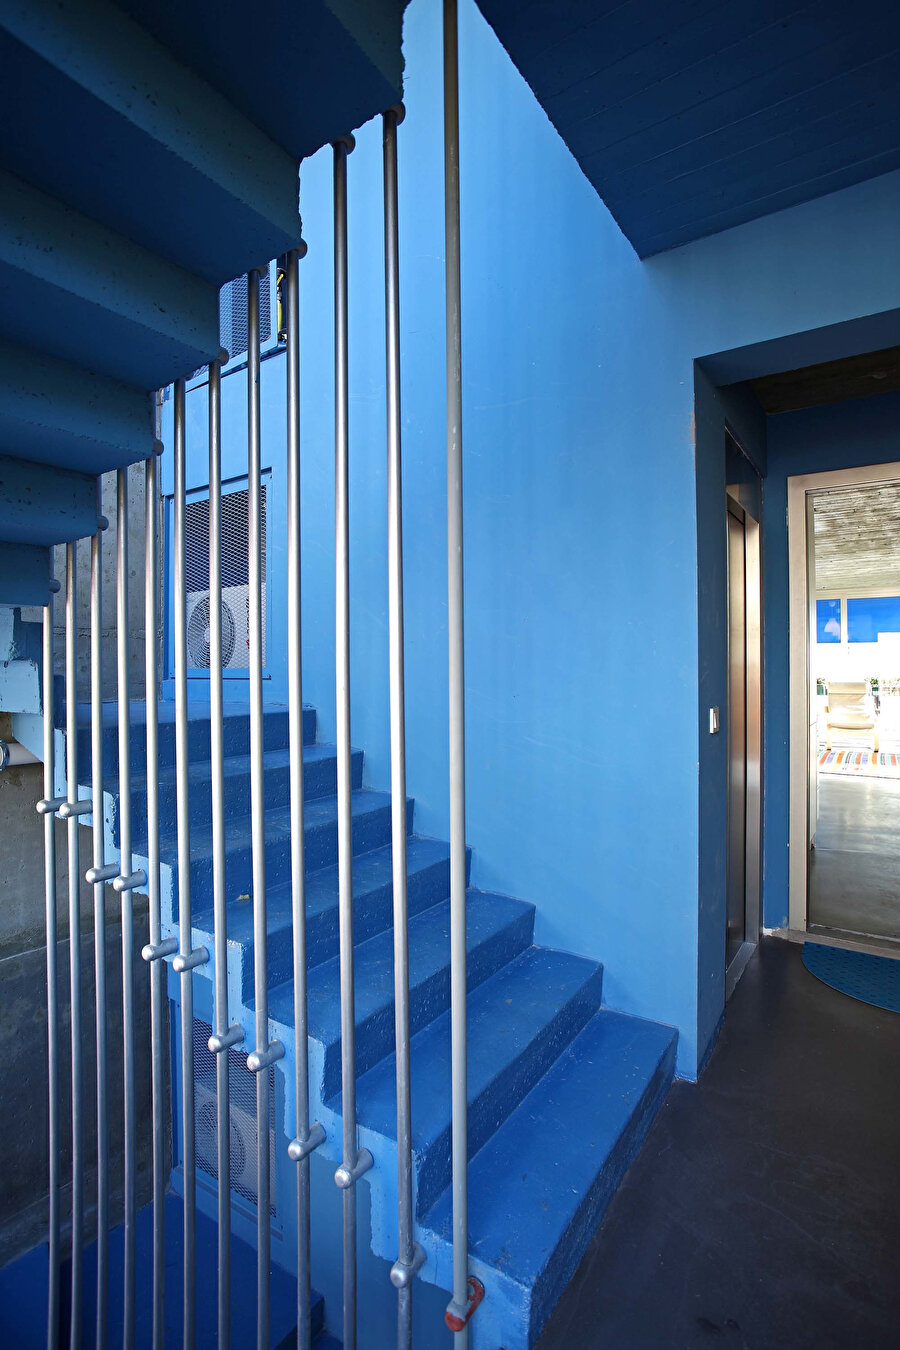 Boydan merdiven korkulukları ilk tasarımdakine benzerlik gösteriyor. 